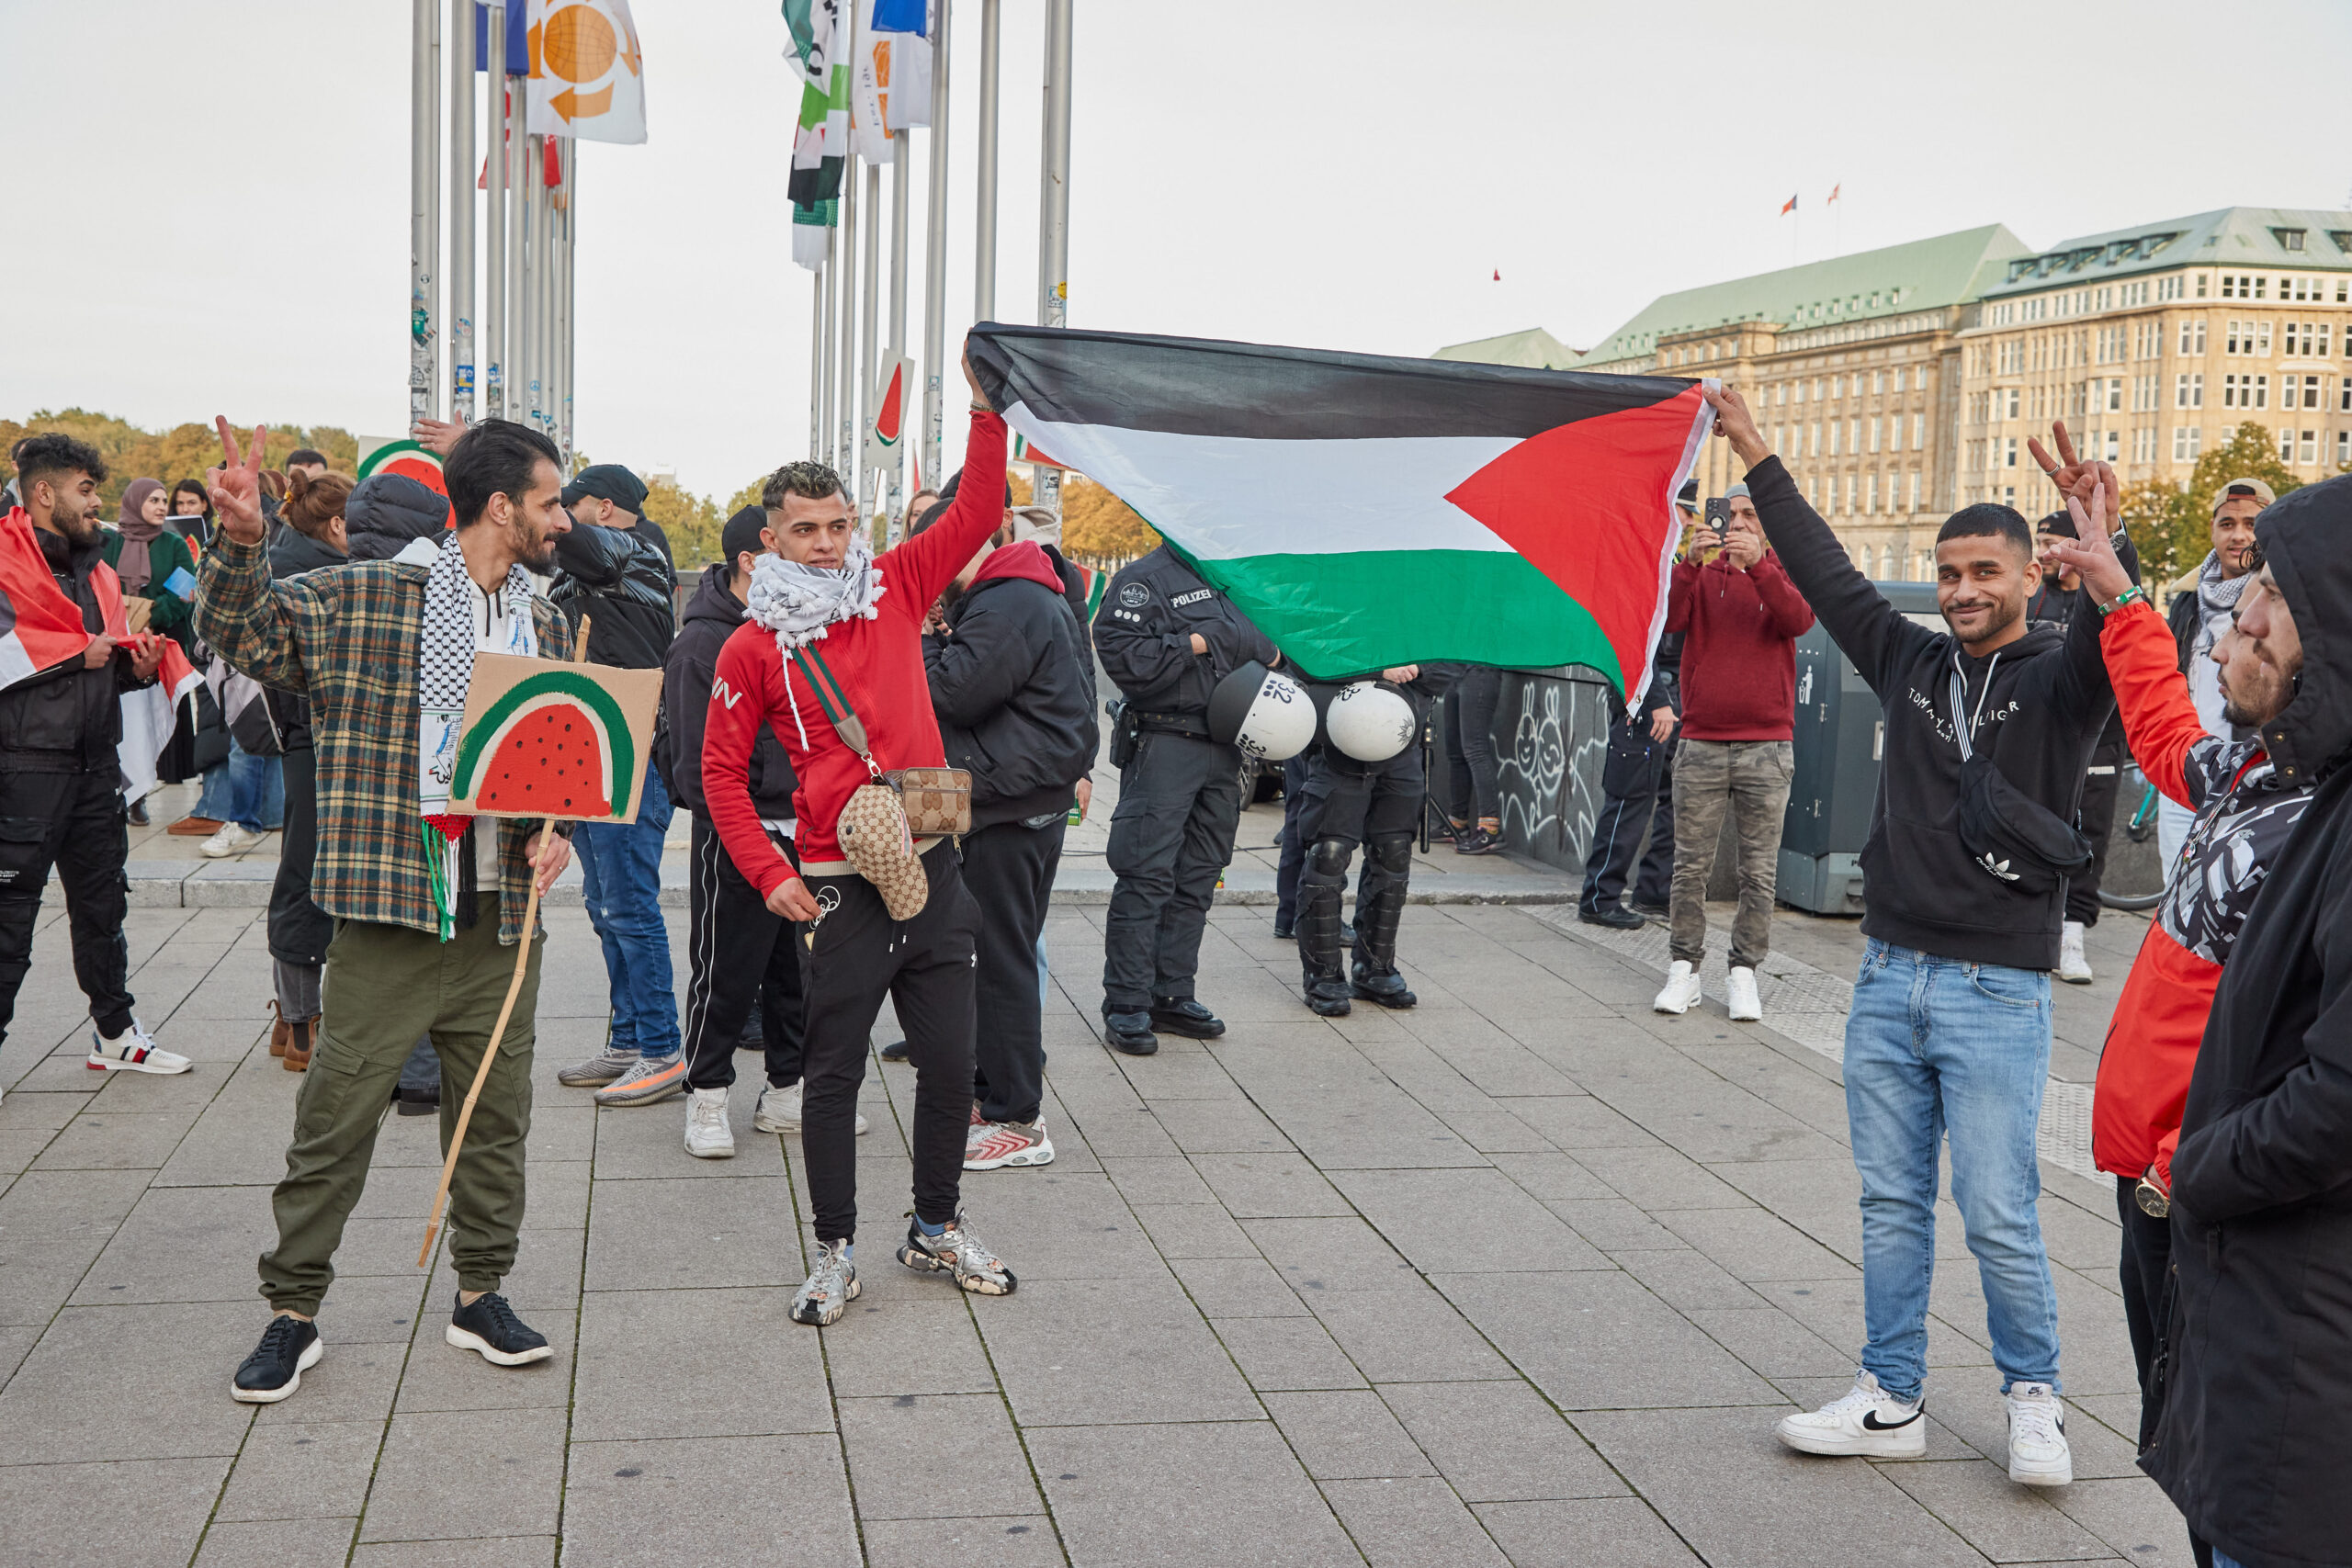 Palästinenser mit Flagge